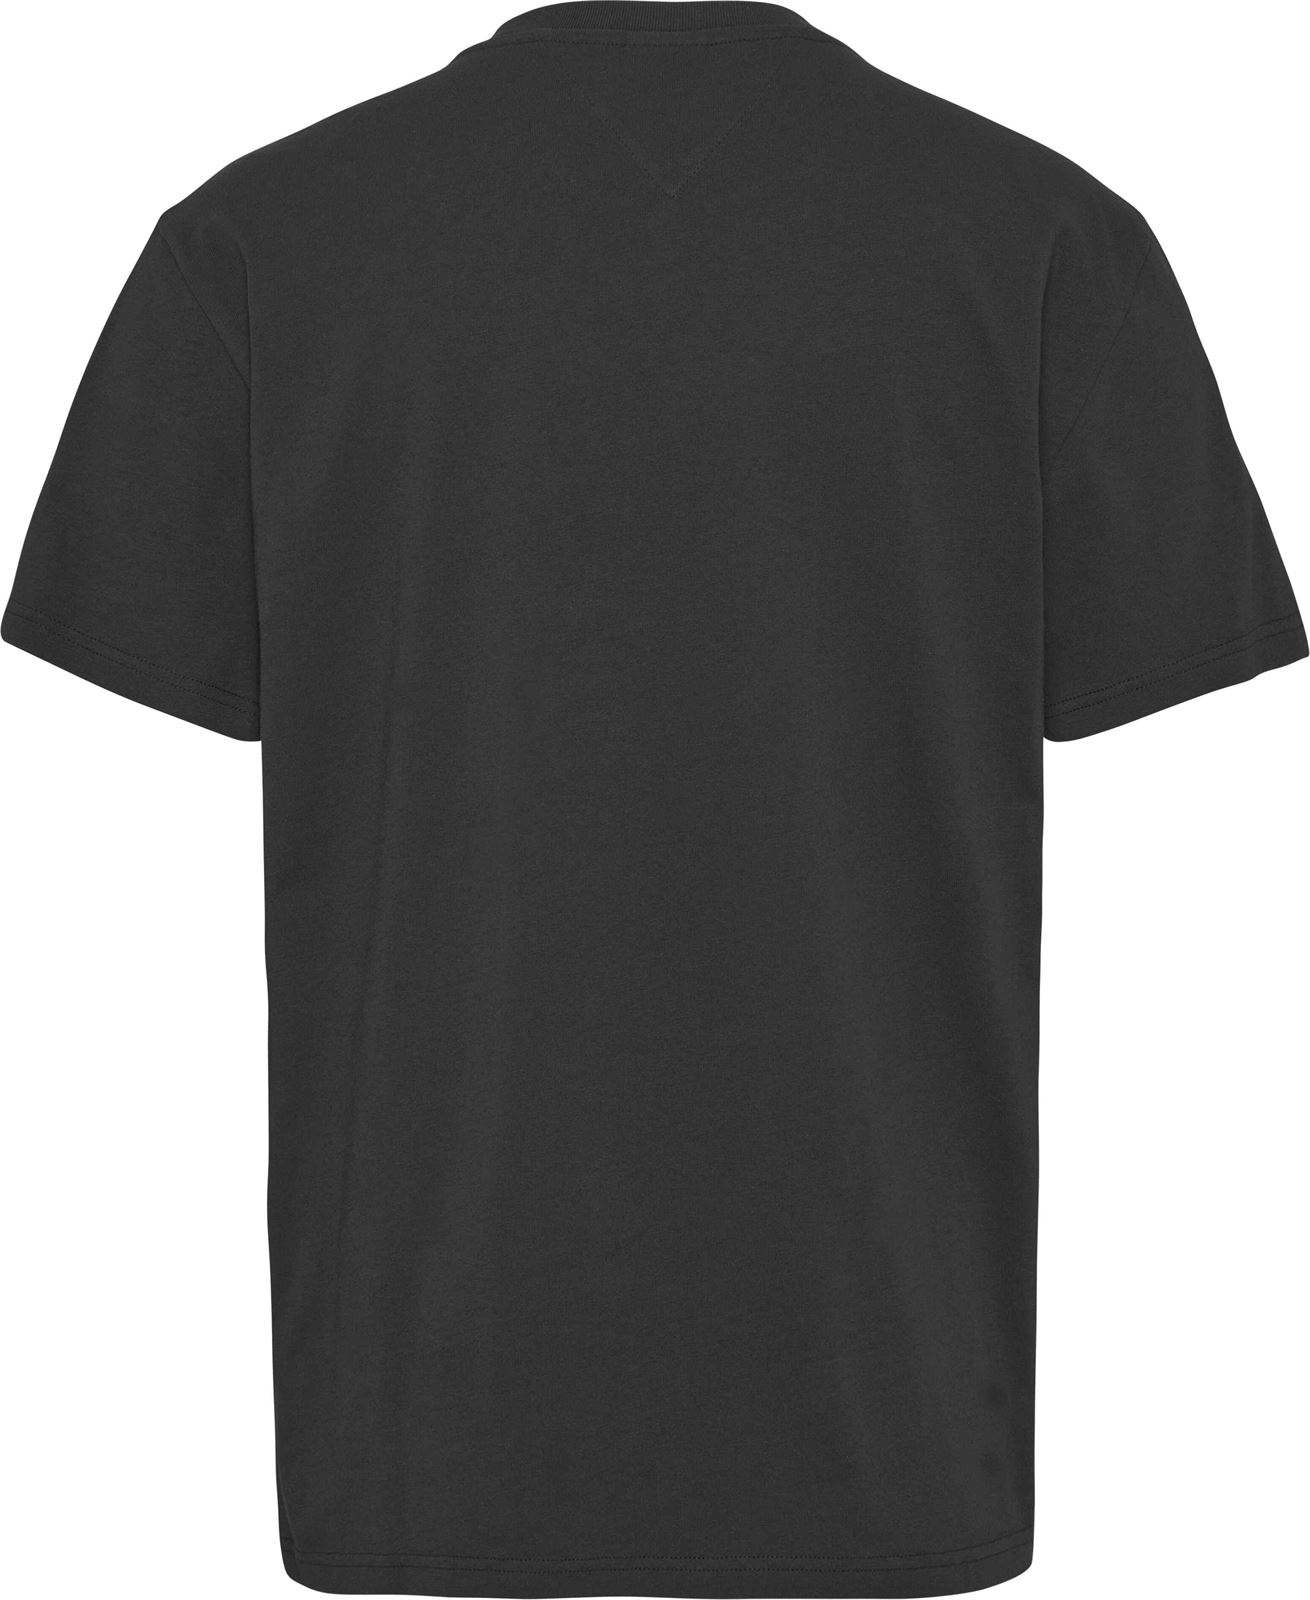 Camiseta TOMMY JEANS DM0DM16825 BDS black - Imagen 3